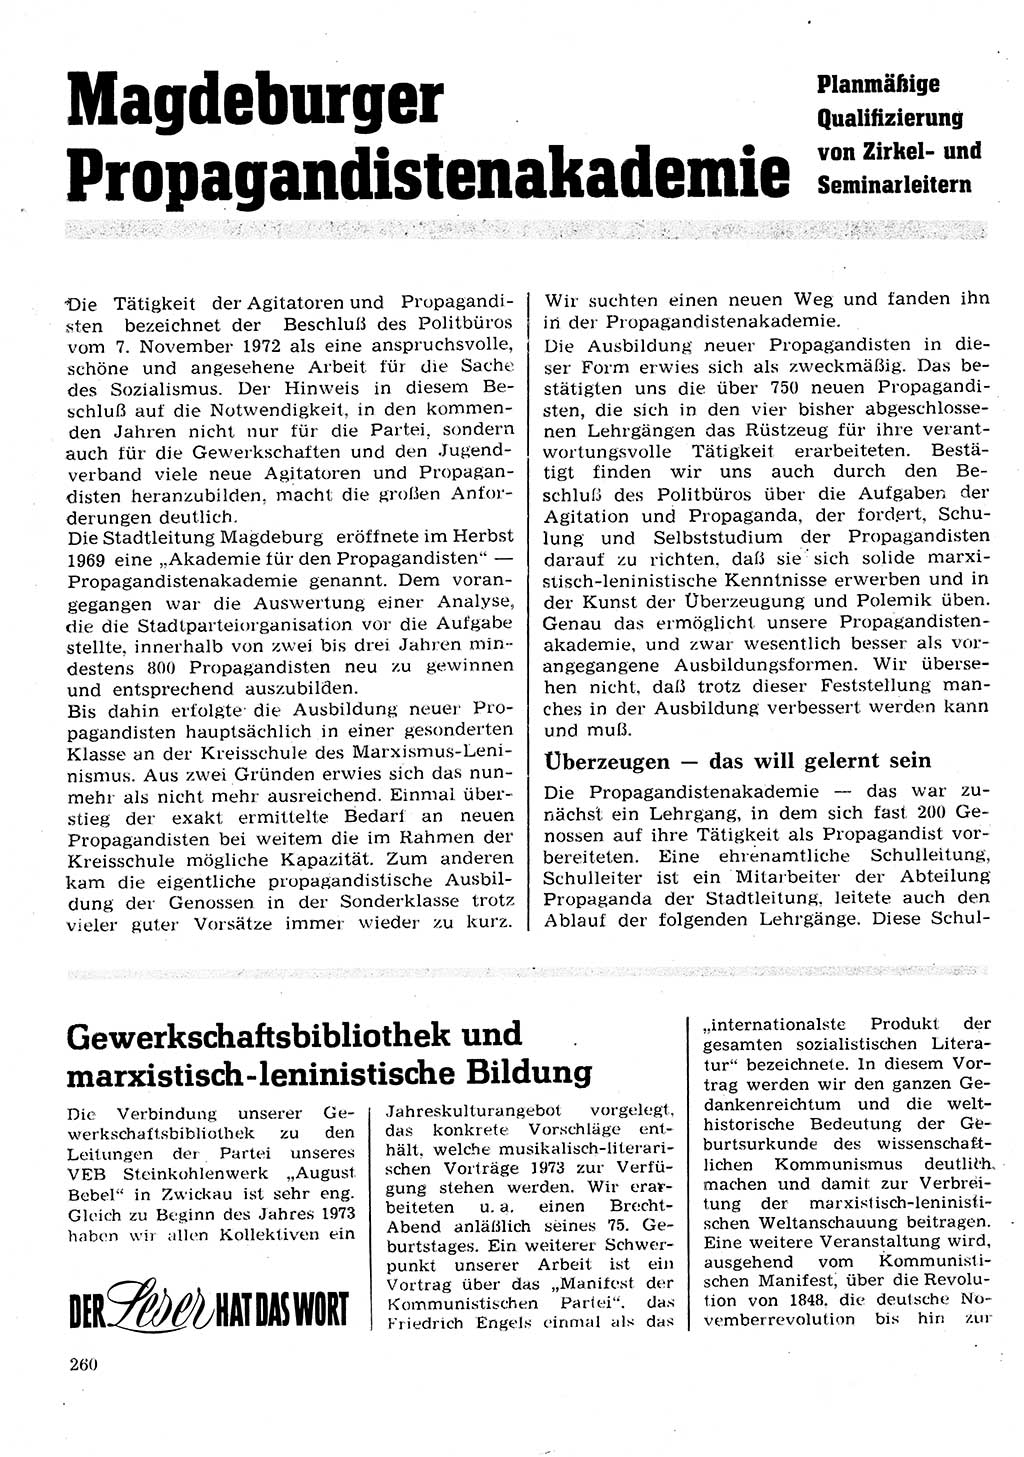 Neuer Weg (NW), Organ des Zentralkomitees (ZK) der SED (Sozialistische Einheitspartei Deutschlands) für Fragen des Parteilebens, 28. Jahrgang [Deutsche Demokratische Republik (DDR)] 1973, Seite 260 (NW ZK SED DDR 1973, S. 260)